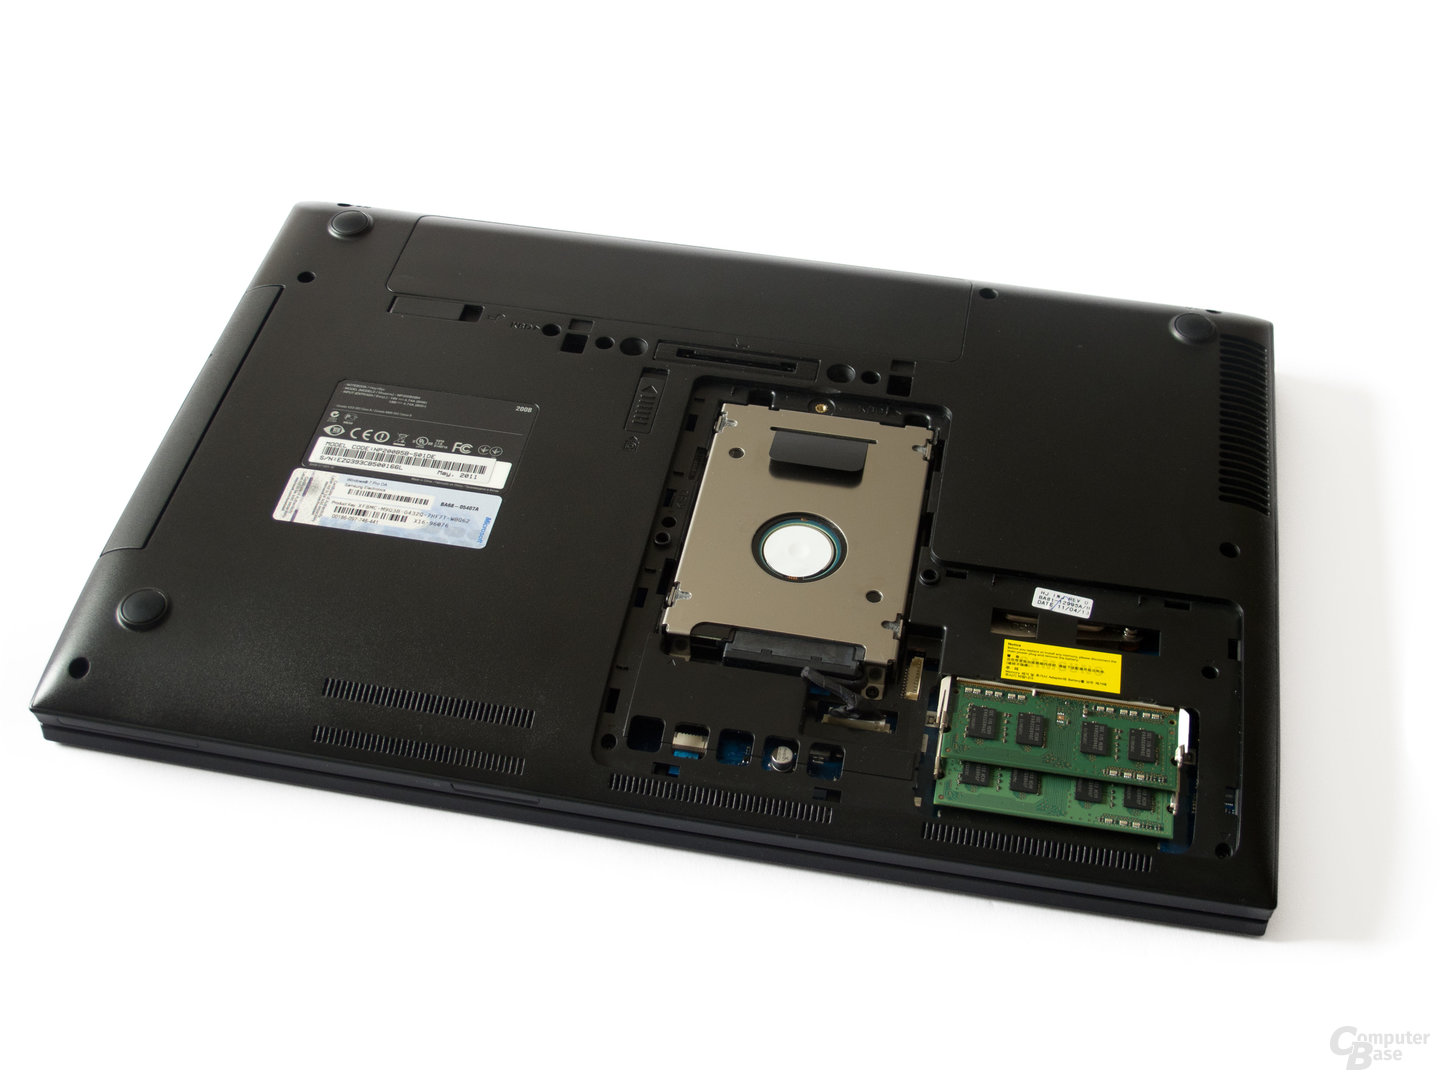 Samsung 200B5B: Festplatte und Arbeitsspeicher sind leicht zugänglich